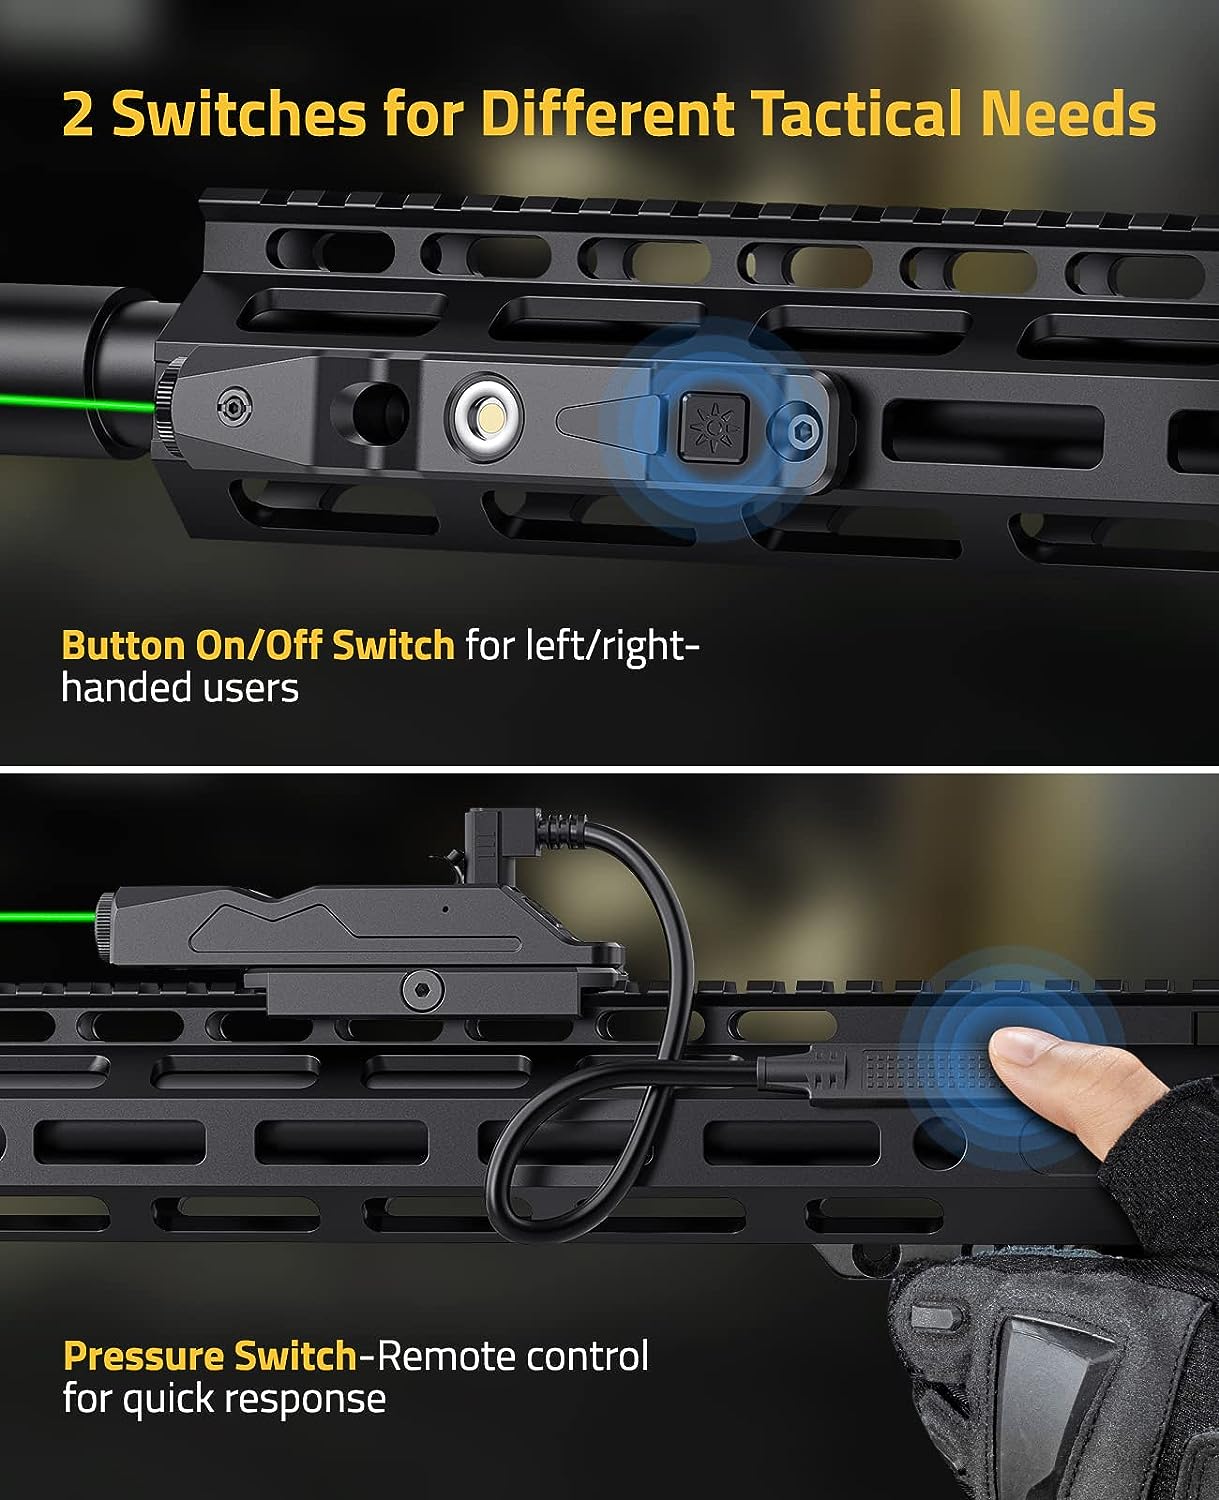 Viseur laser vert compatible avec rail Picatinny M-Lok, fusil à profil  ultra-bas, visée laser